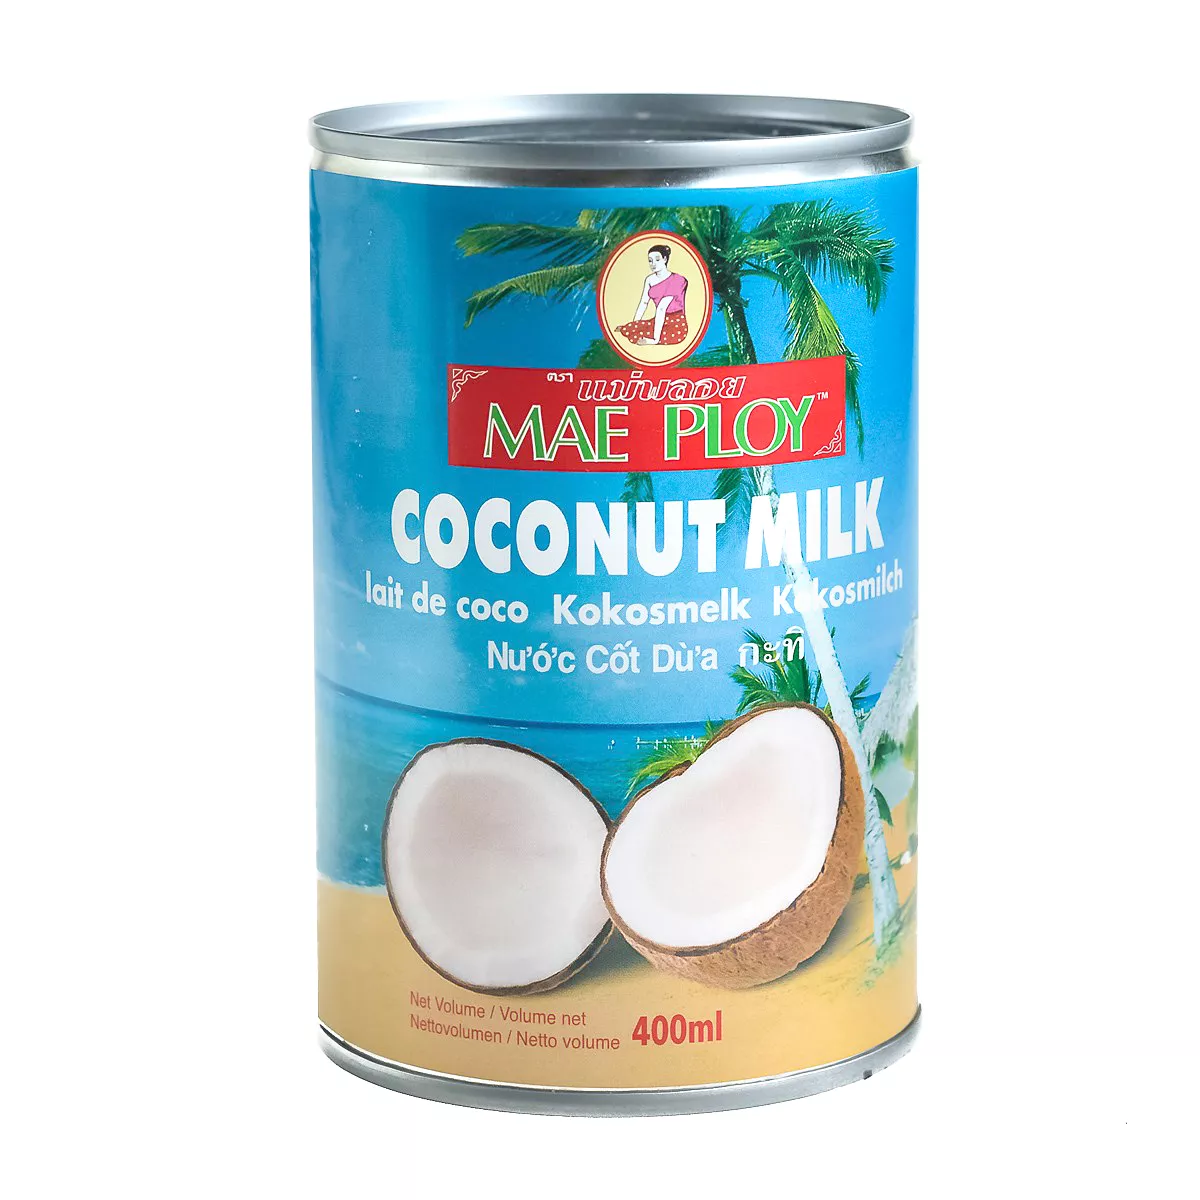 Lapte de cocos MAE PLOY 400ml, [],asianfood.ro